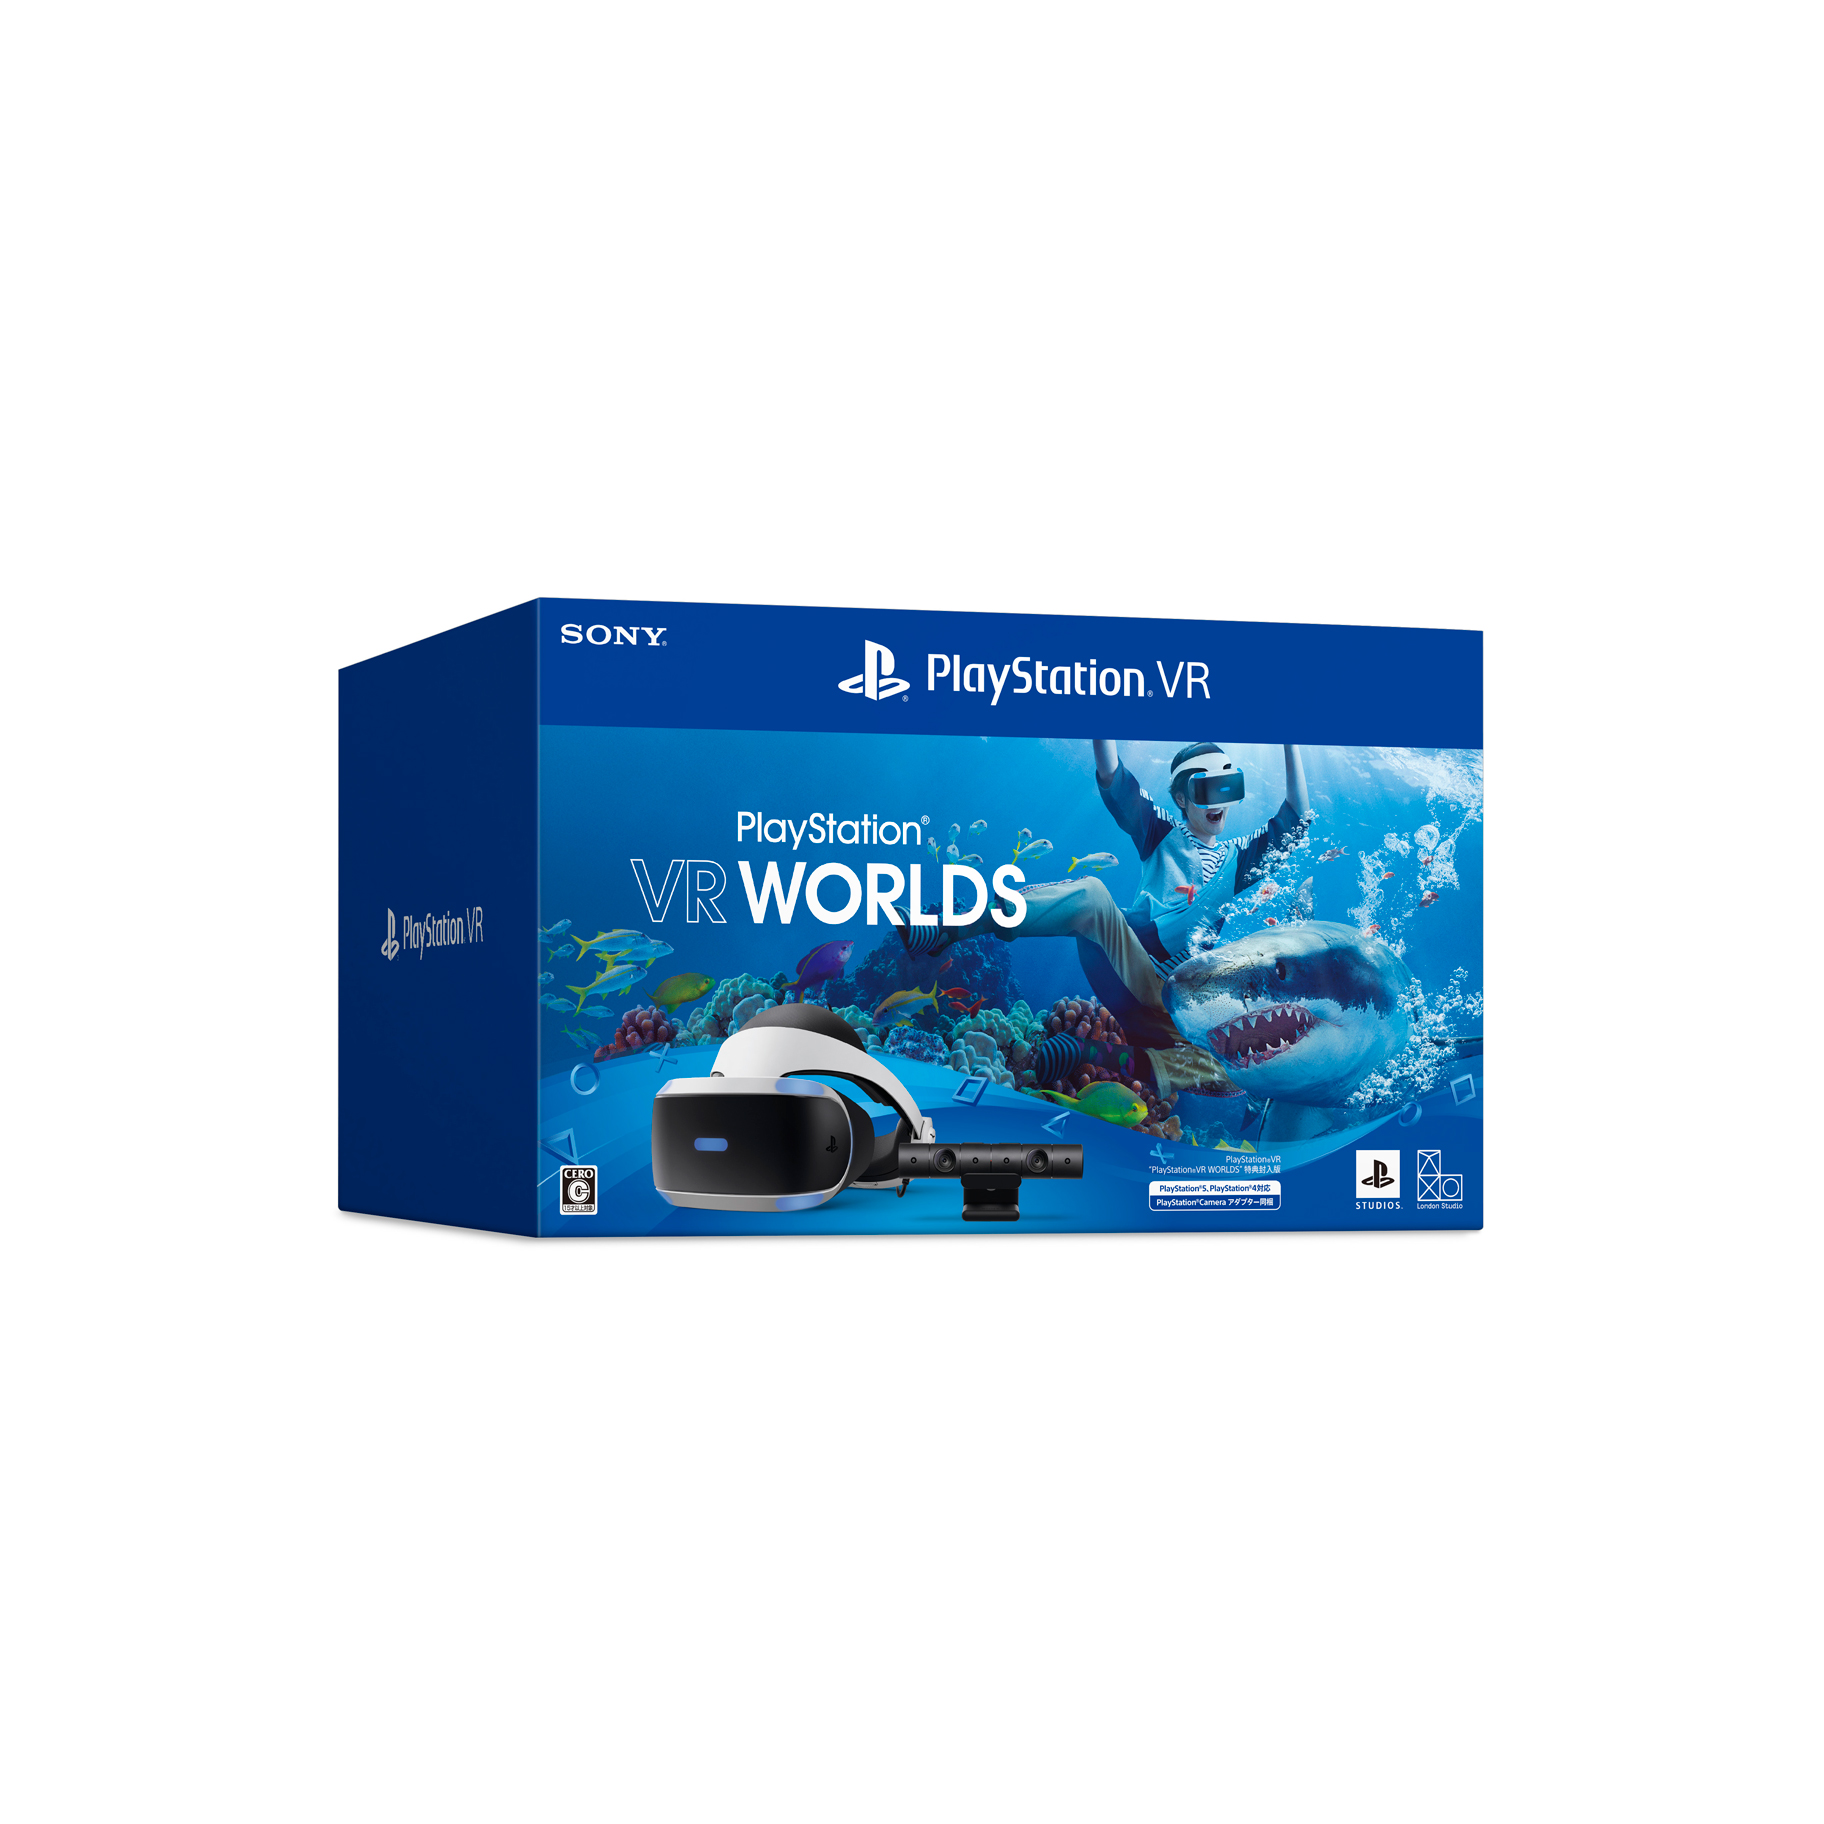 PlayStation VR “PlayStation VR WORLDS 特典封入版 - テレビゲーム